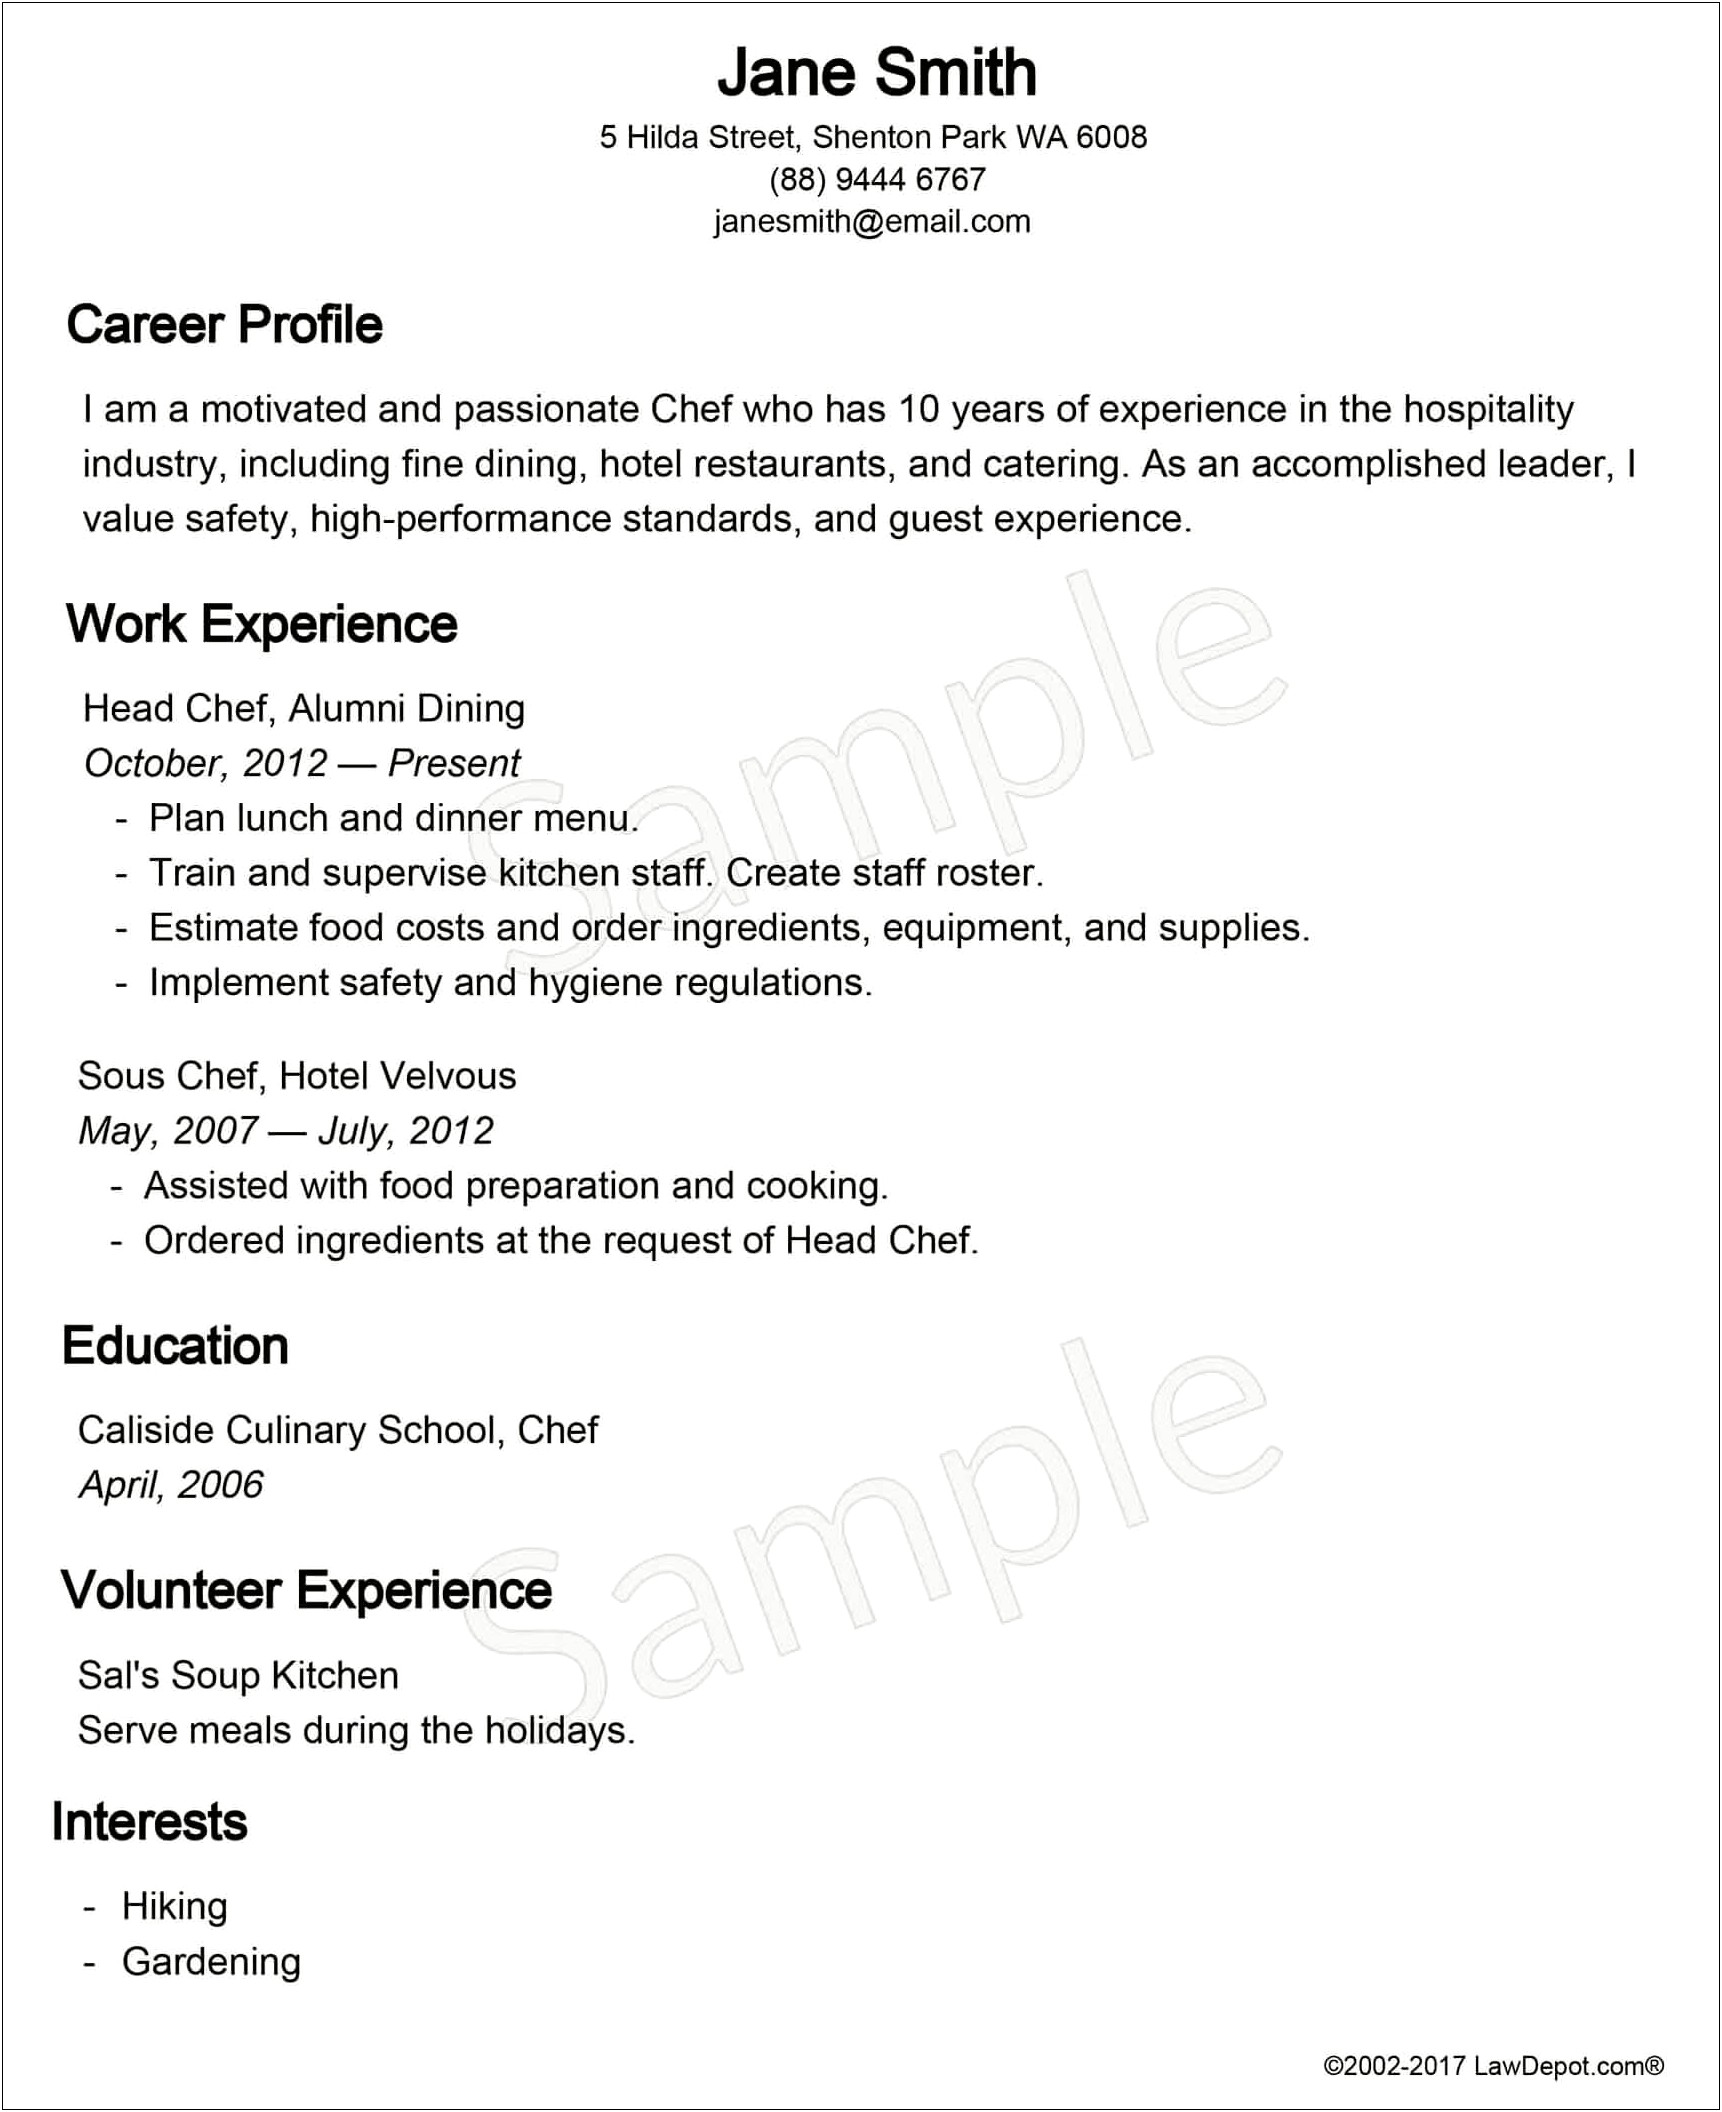 Sample Resume For Job Application In Australia